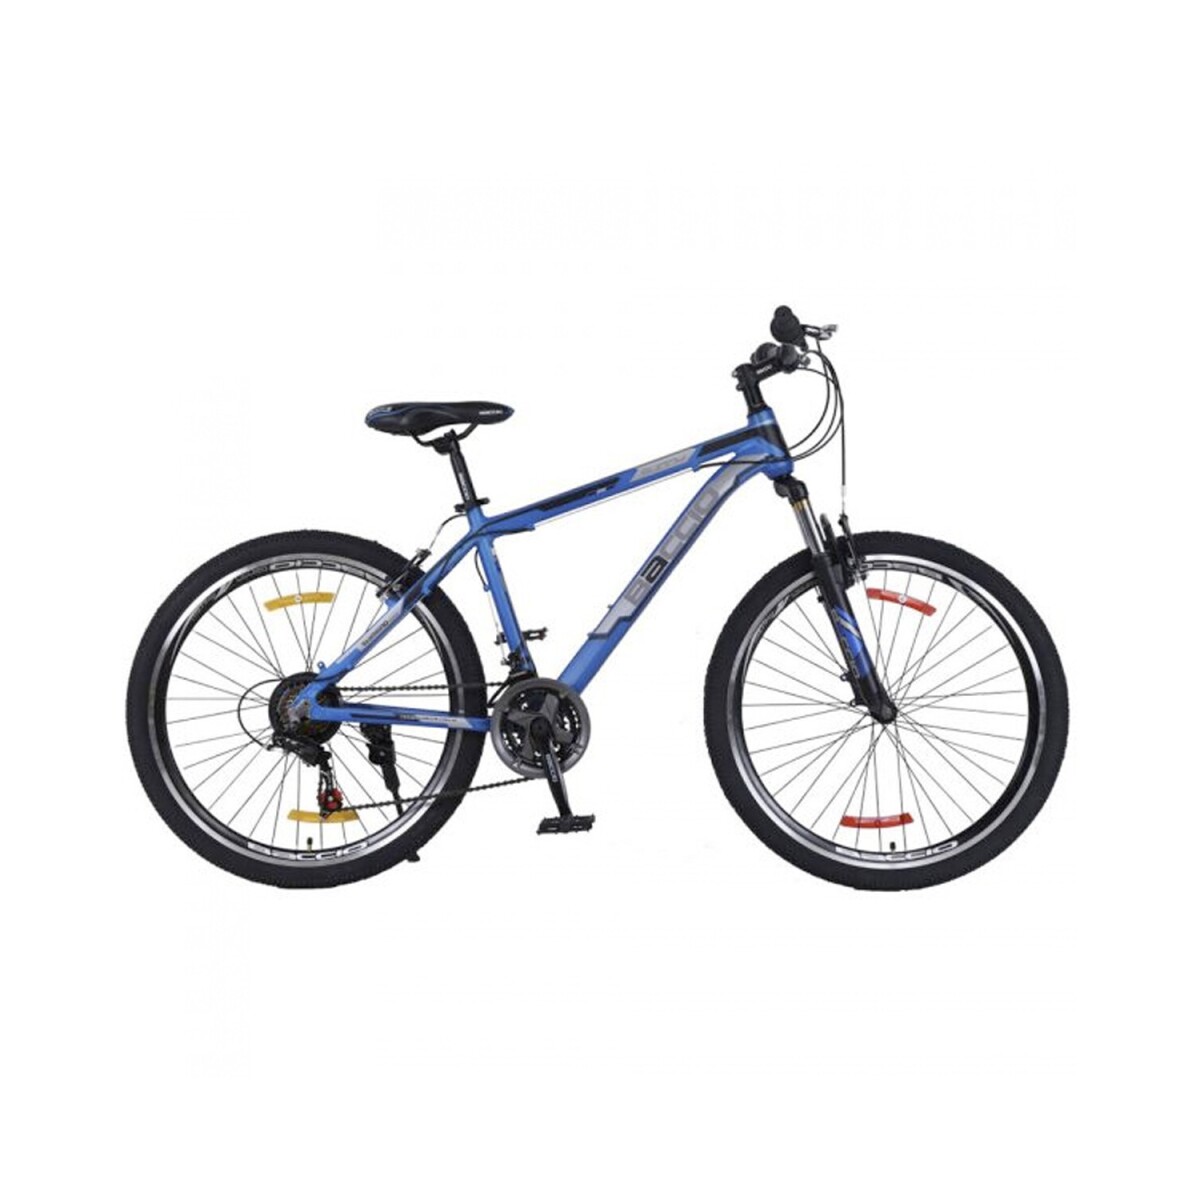 Bicicleta Baccio Sunny Montaña rodado 27.5 con 21 cambios y suspensión - Azul/Gris 